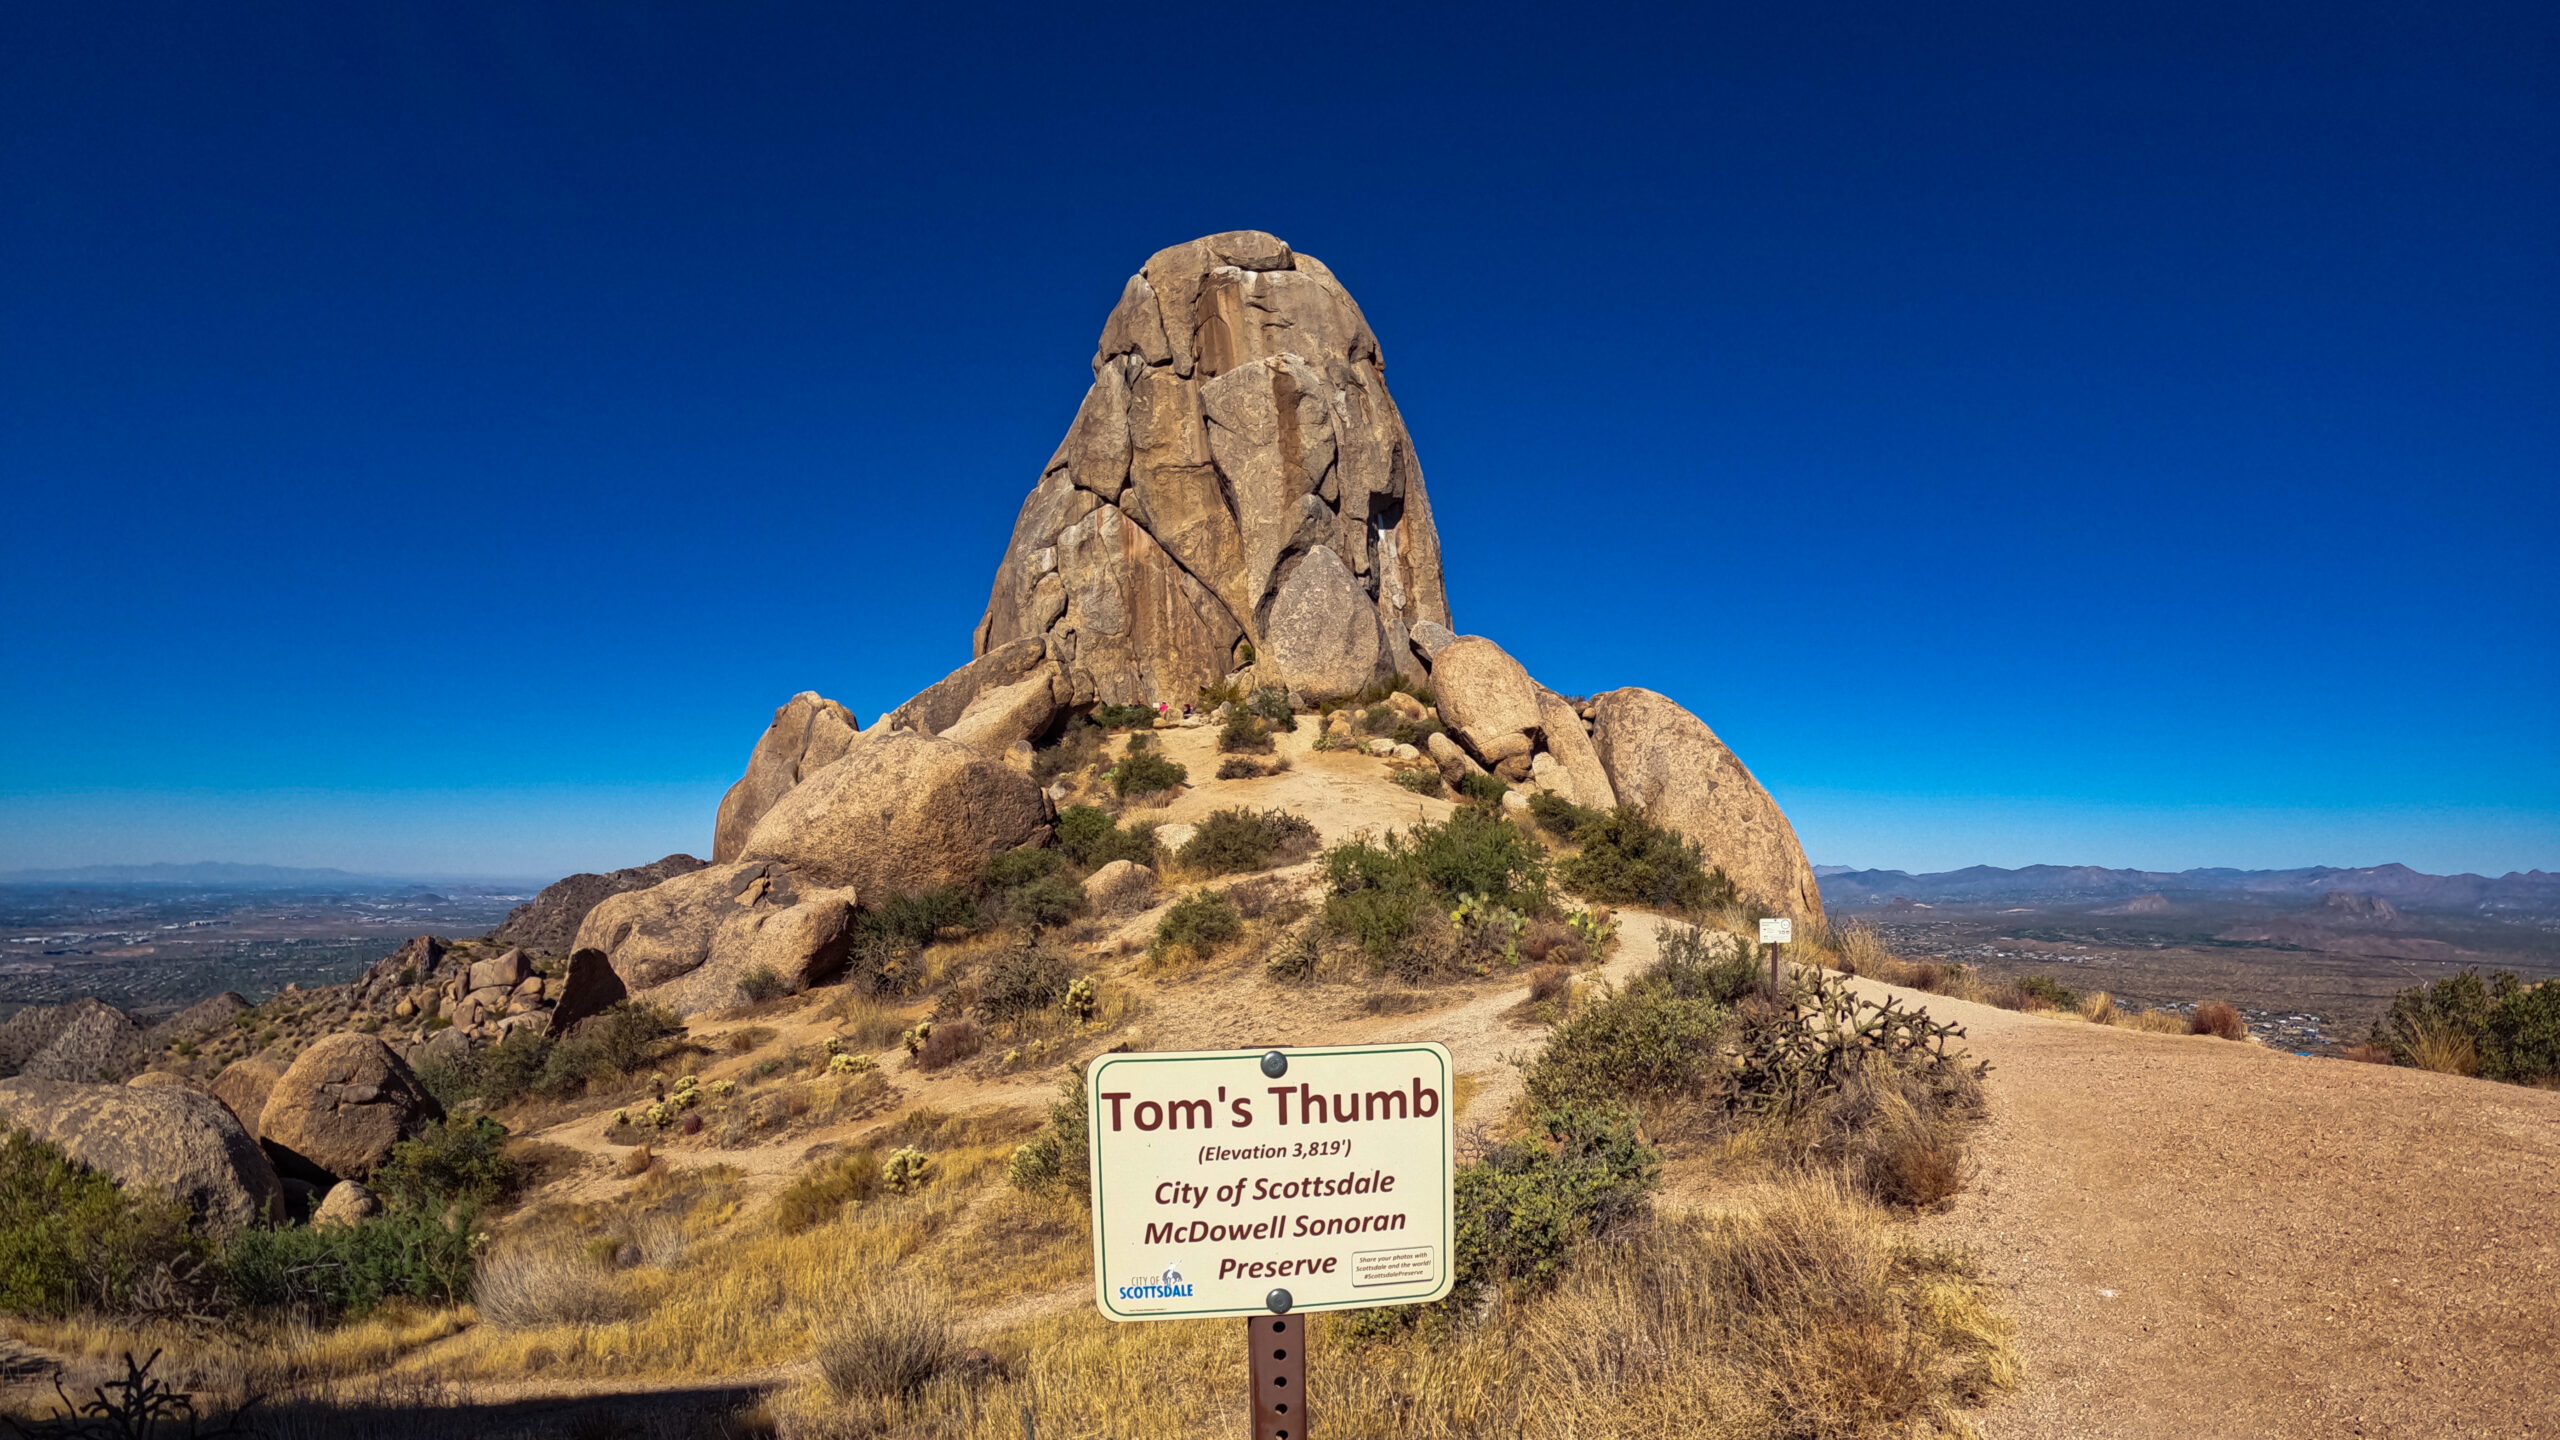 tom's thumb trail sign